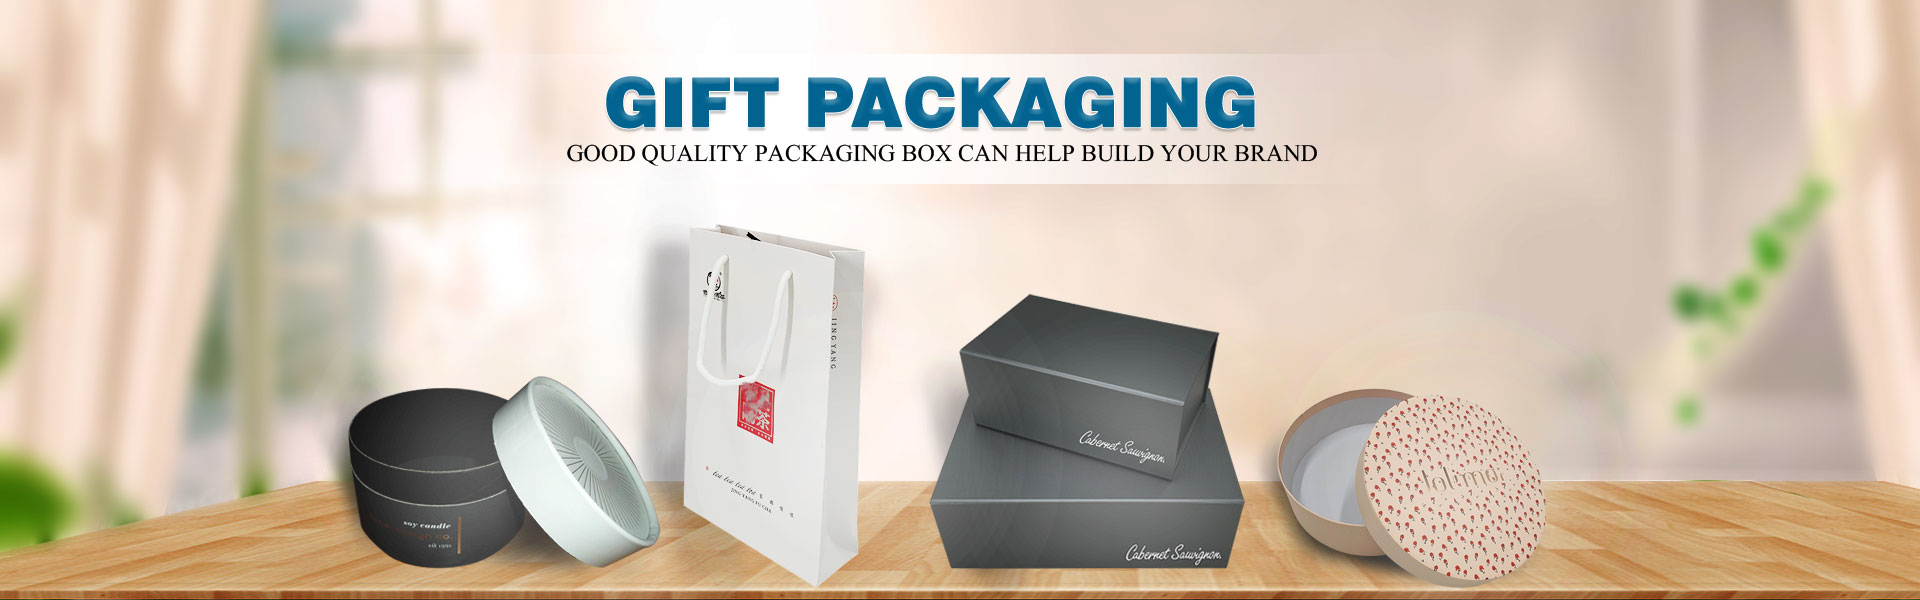 Caixa de papel, caixa de presente, Quadro de bolo.,Dongguan Yisheng Packaging Co., Ltd